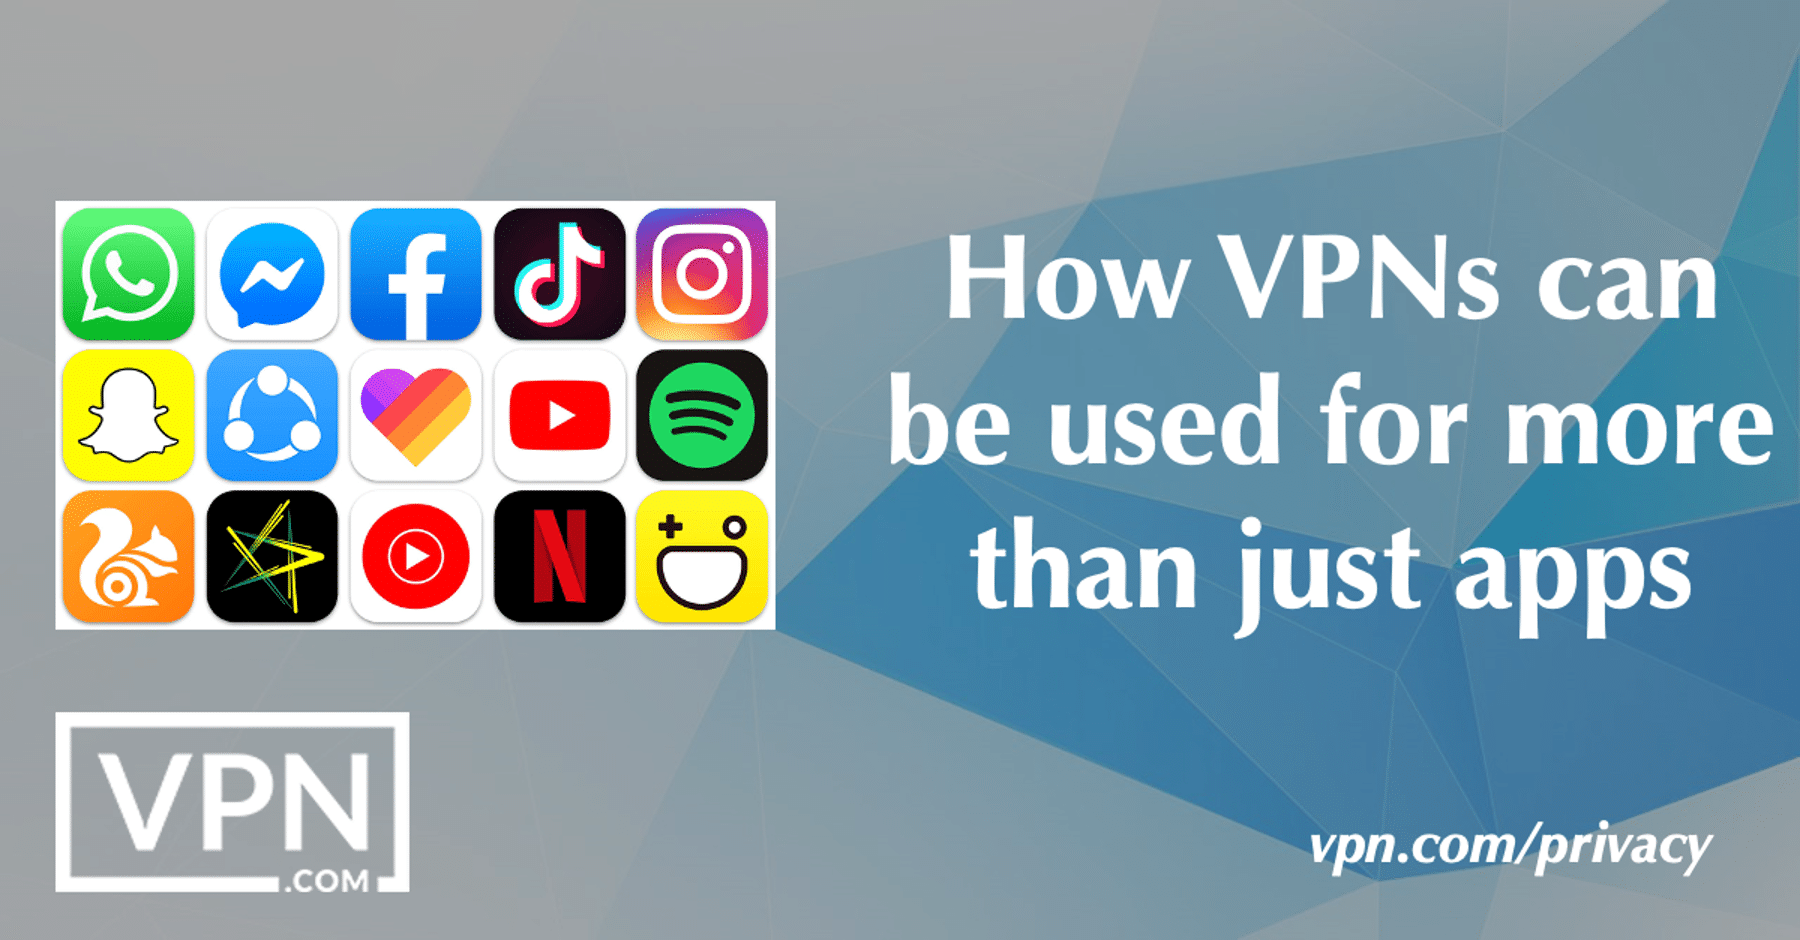 Jak VPN mogą być używane nie tylko do aplikacji